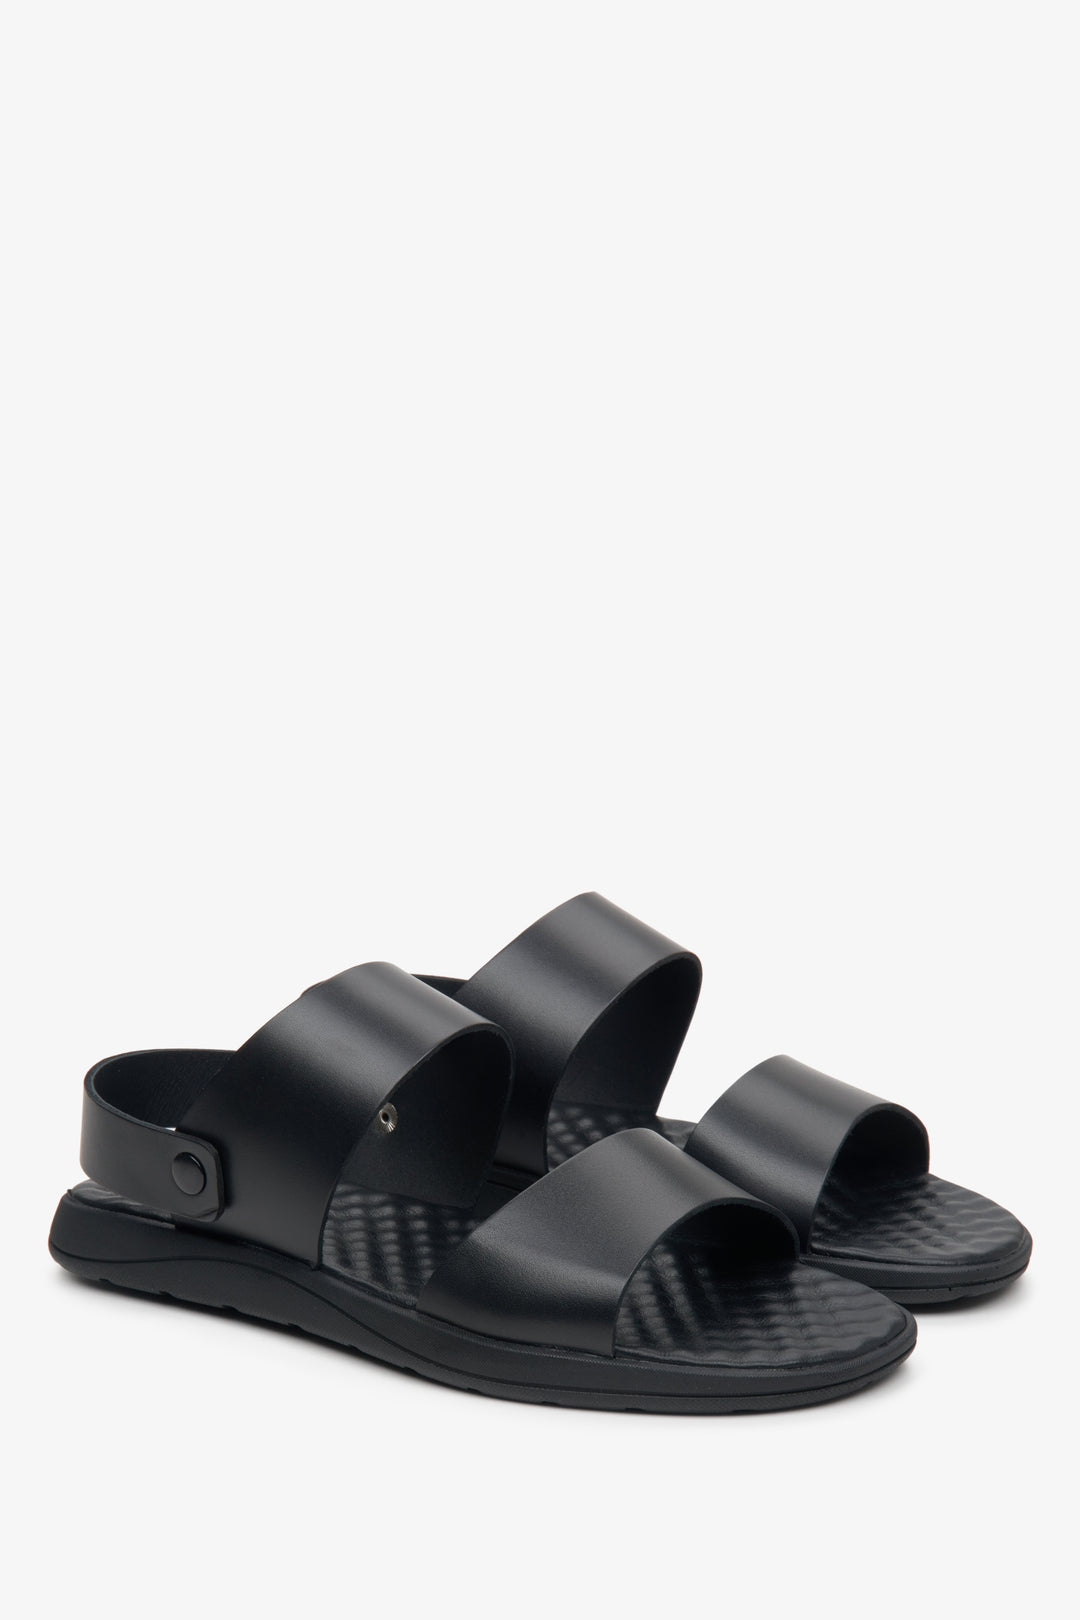 Skórzane, czarne sandały męskie Estro z grubych pasków - prezentacja profilu butów.